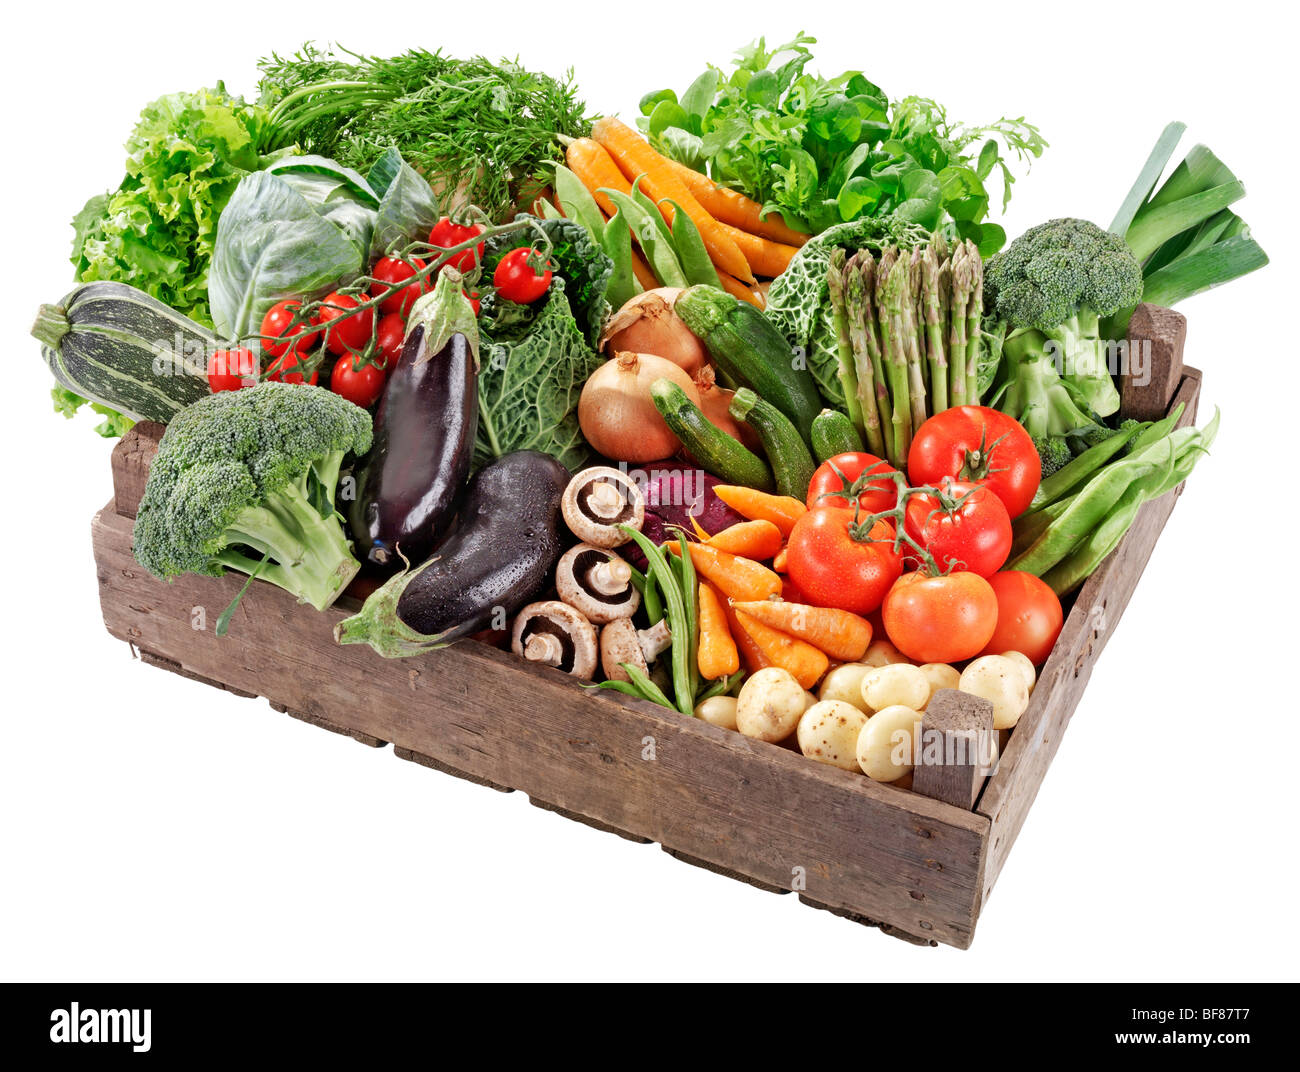 Caja de verduras frescas Foto de stock